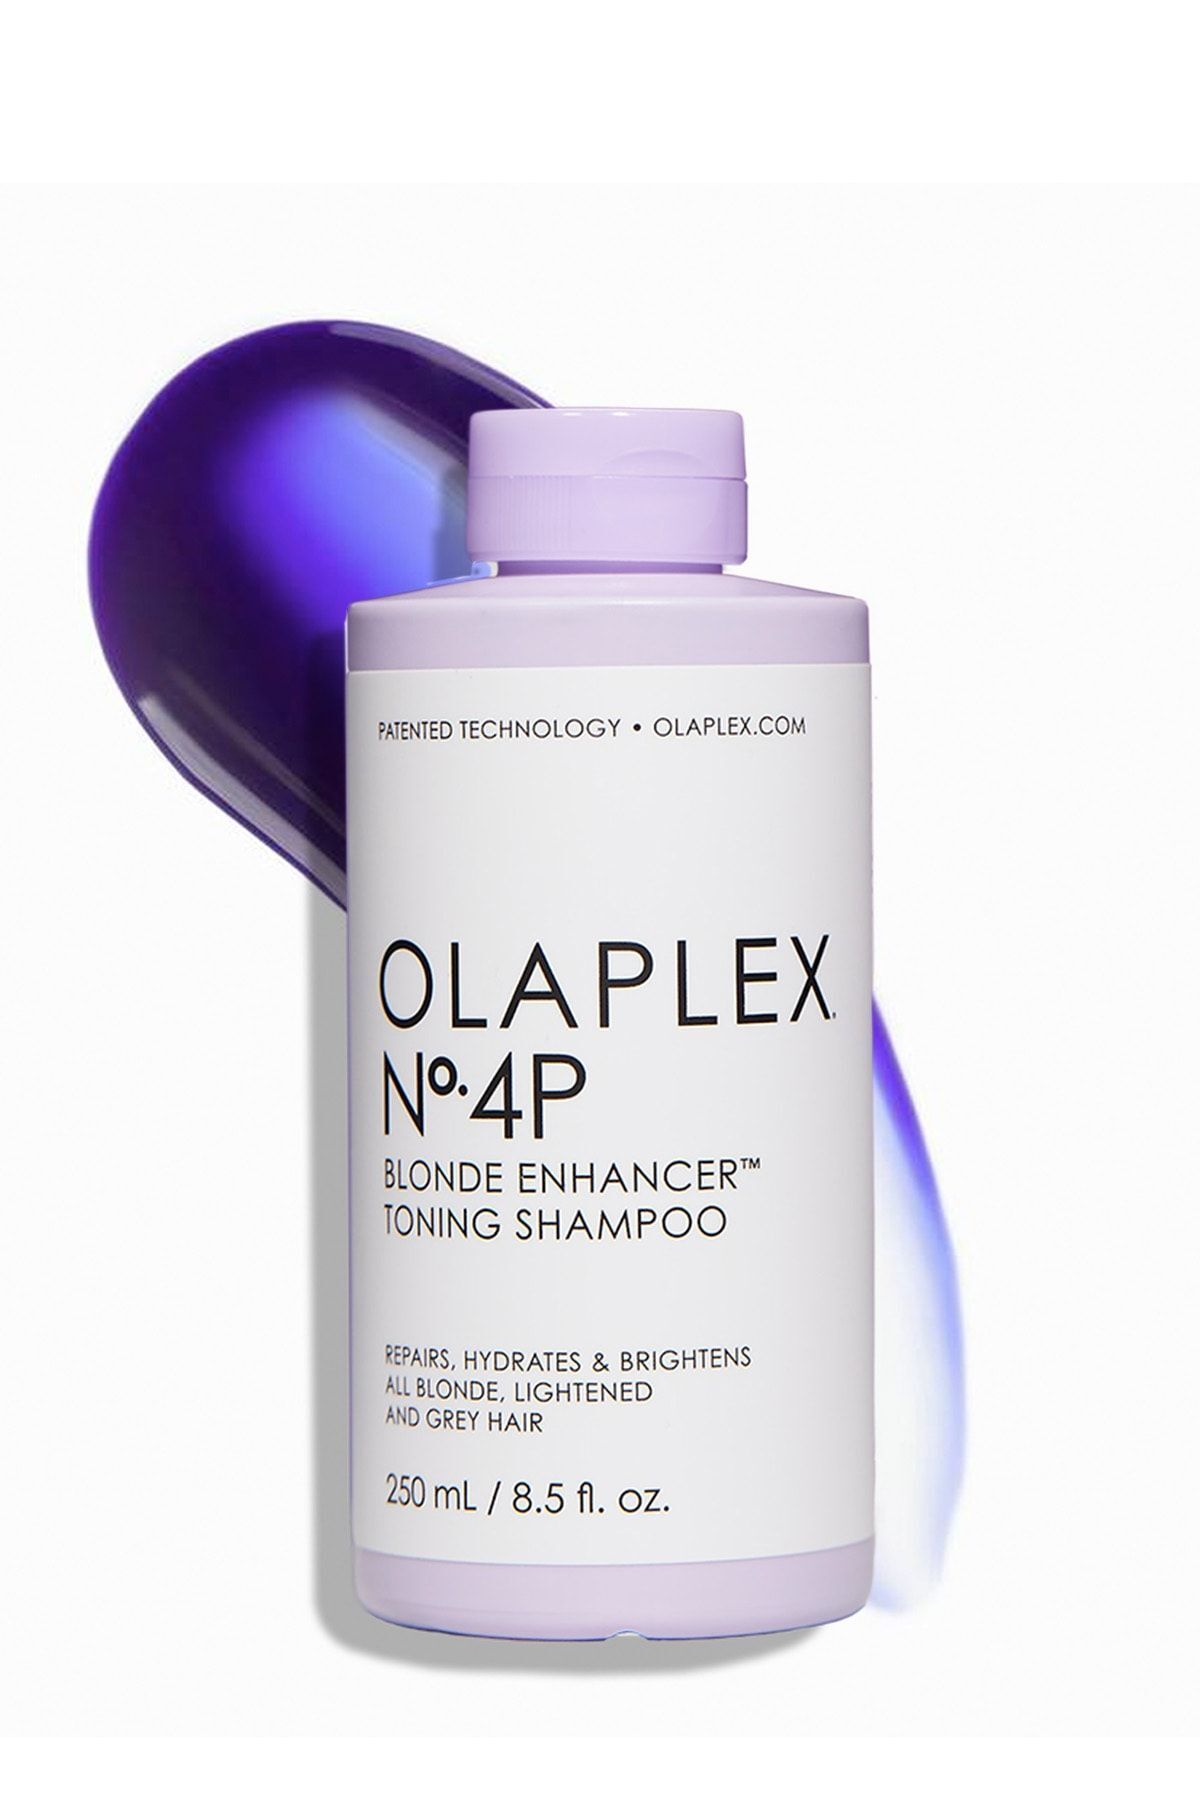 Olaplex Nº.4p Blonde Enhancer Toning Shampoo - Renk Koruyucu & Bağ Güçlendirici Mor Şampuan